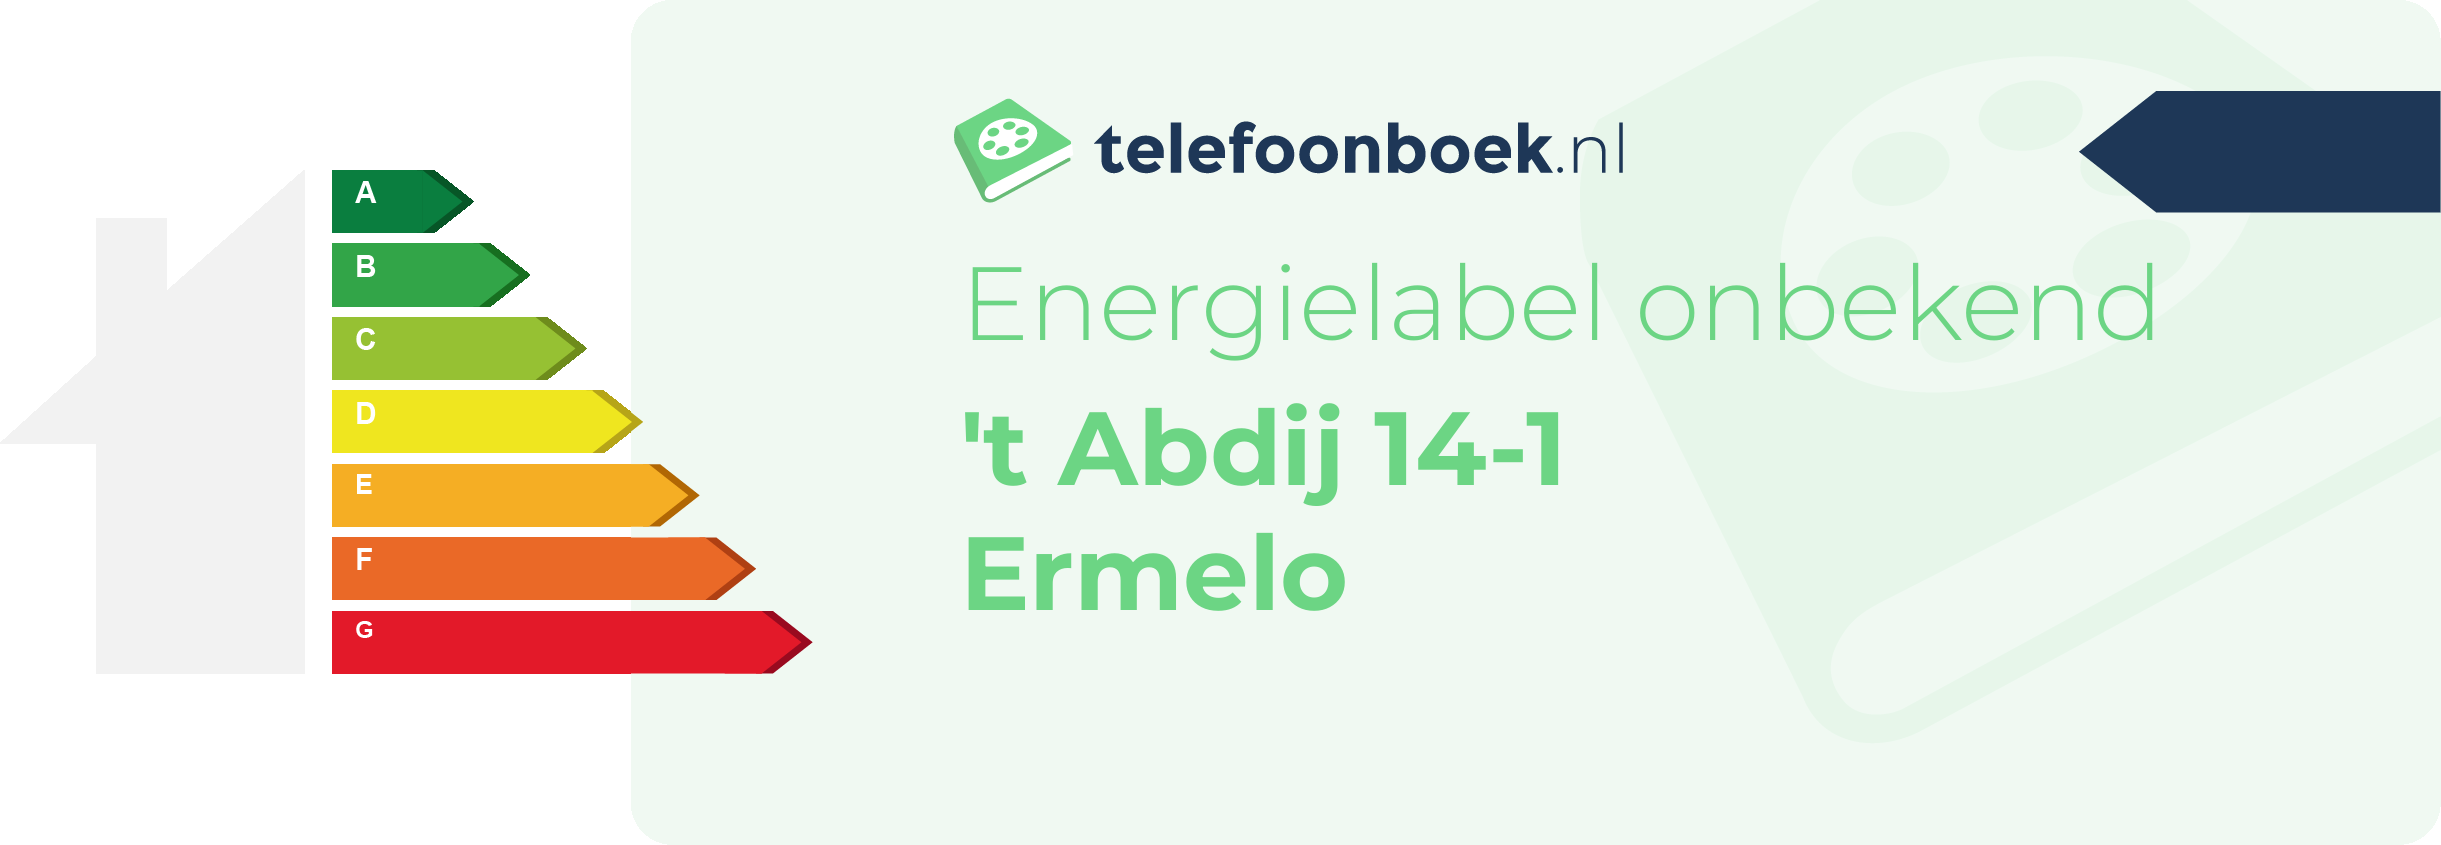 Energielabel 't Abdij 14-1 Ermelo